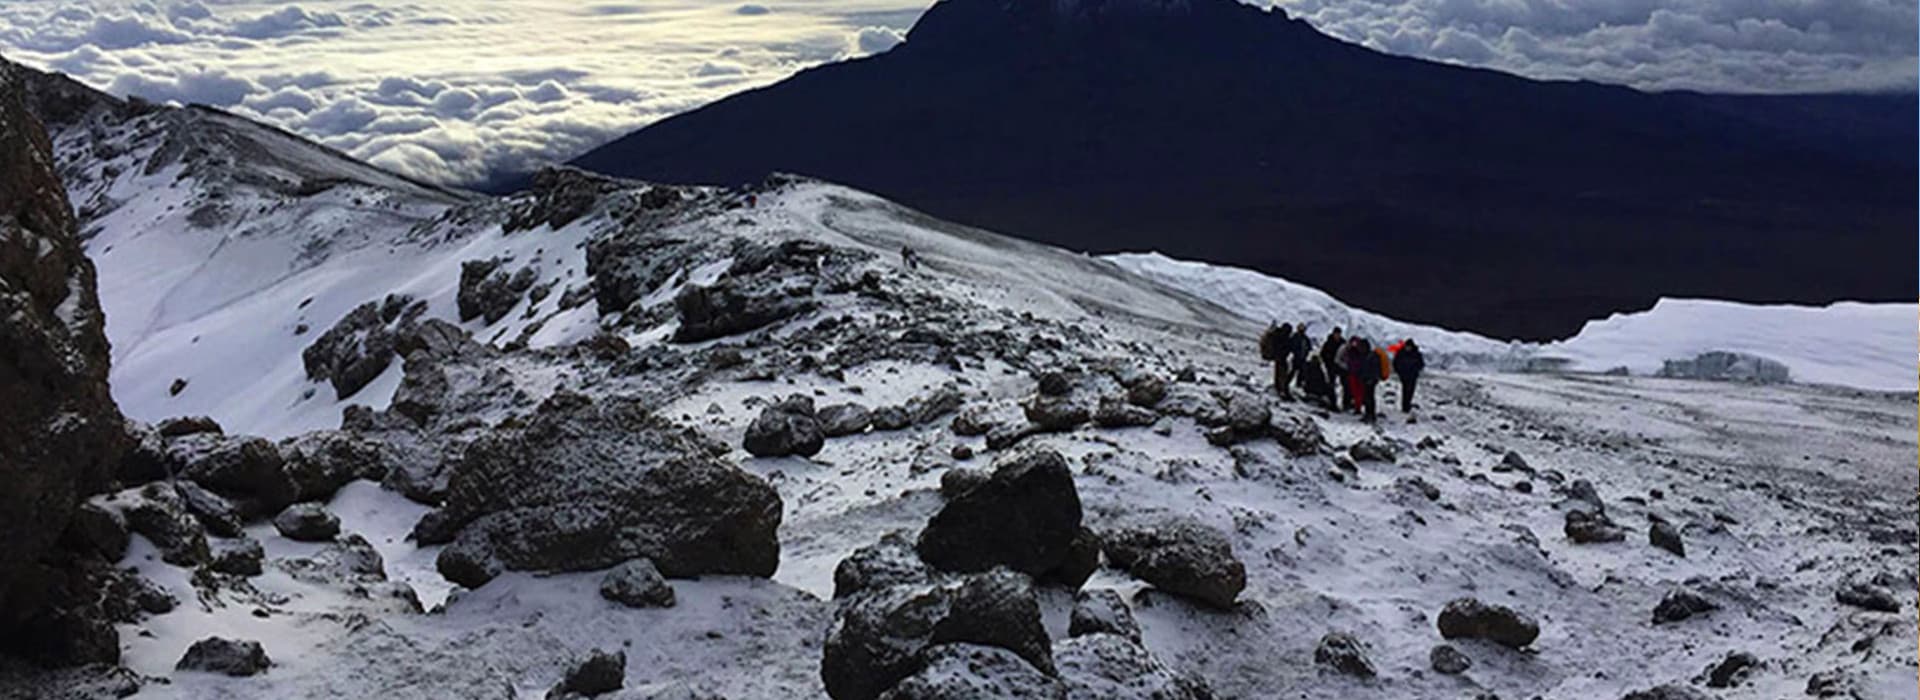 6 Days Kilimanjaro Trek: Shira Route